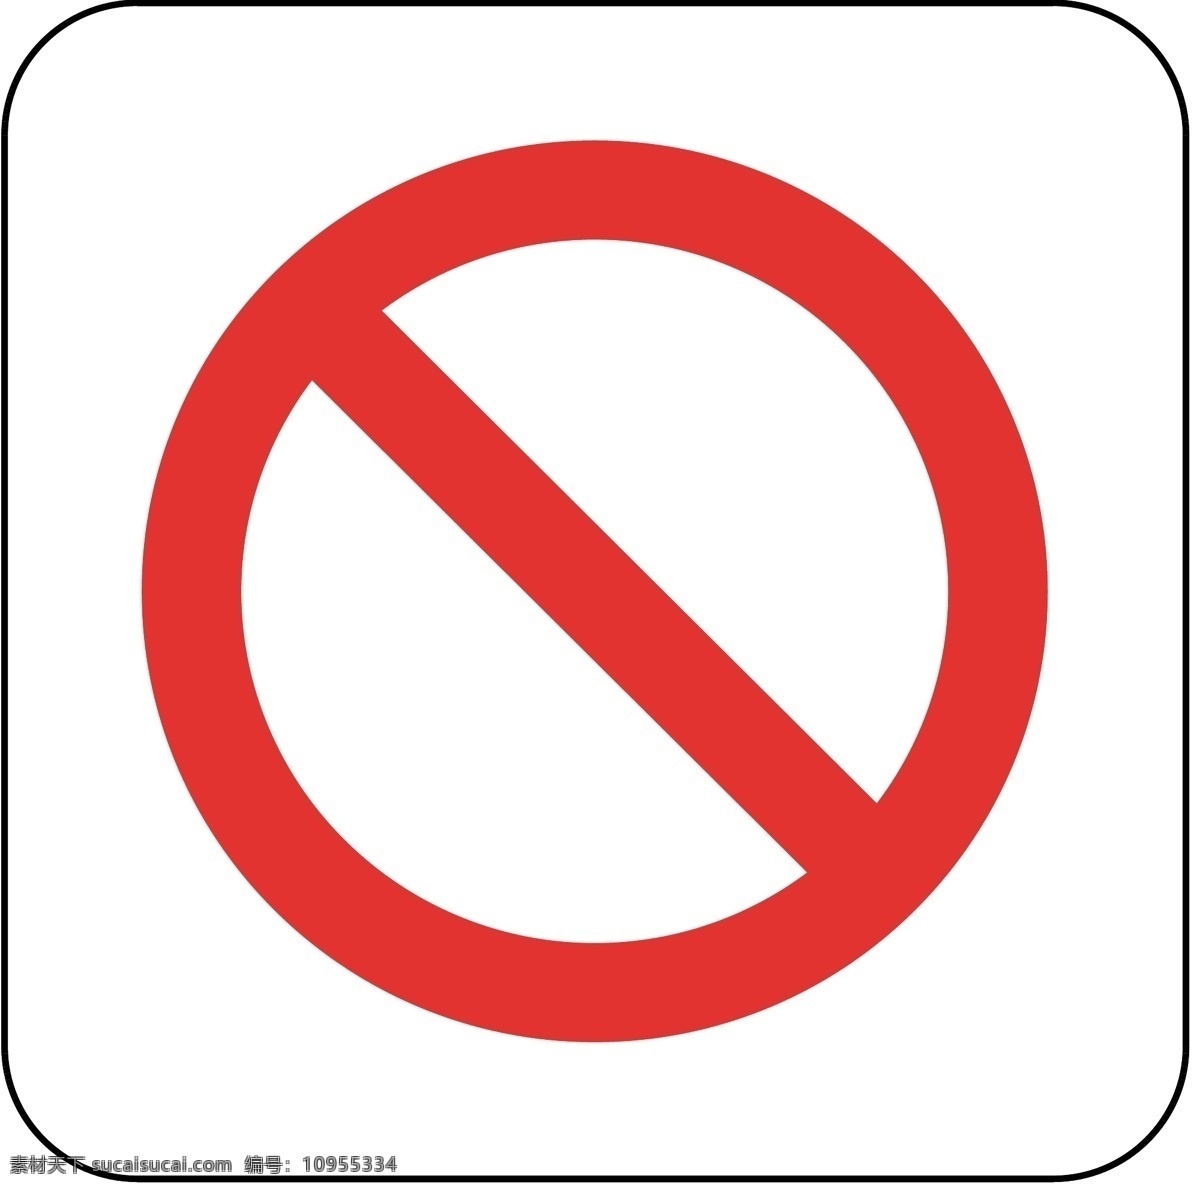 禁止标识 禁止通行 禁止通过 停车 停止 禁行 限行 请勿通行 不许通过 标志图标 公共标识标志